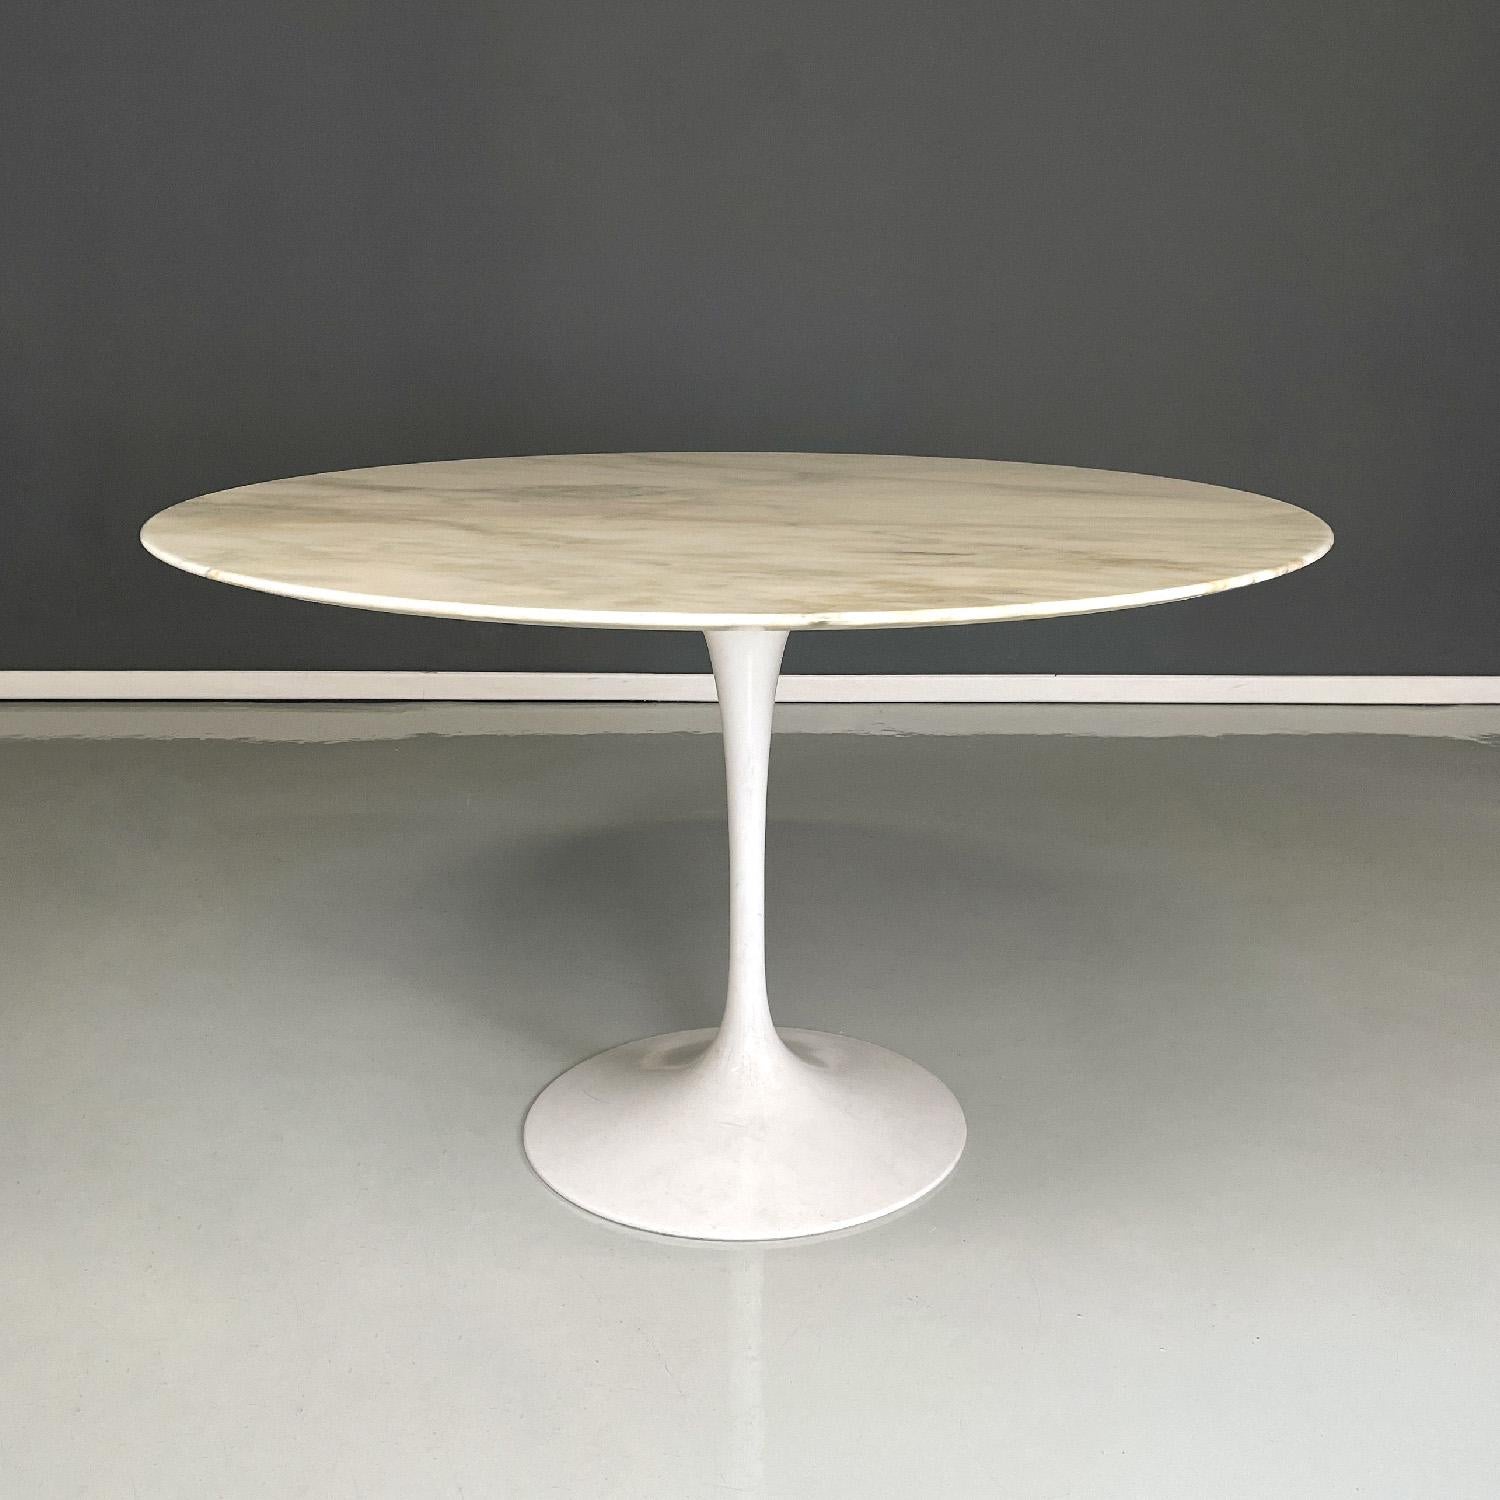 Table de salle à manger américaine moderne du milieu du siècle Tulip par Eero Saarinen pour Knoll, années 1960
Table de salle à manger mod. Tulipe avec plateau rond en marbre blanc. La base est composée d'une patte centrale en métal peint en blanc